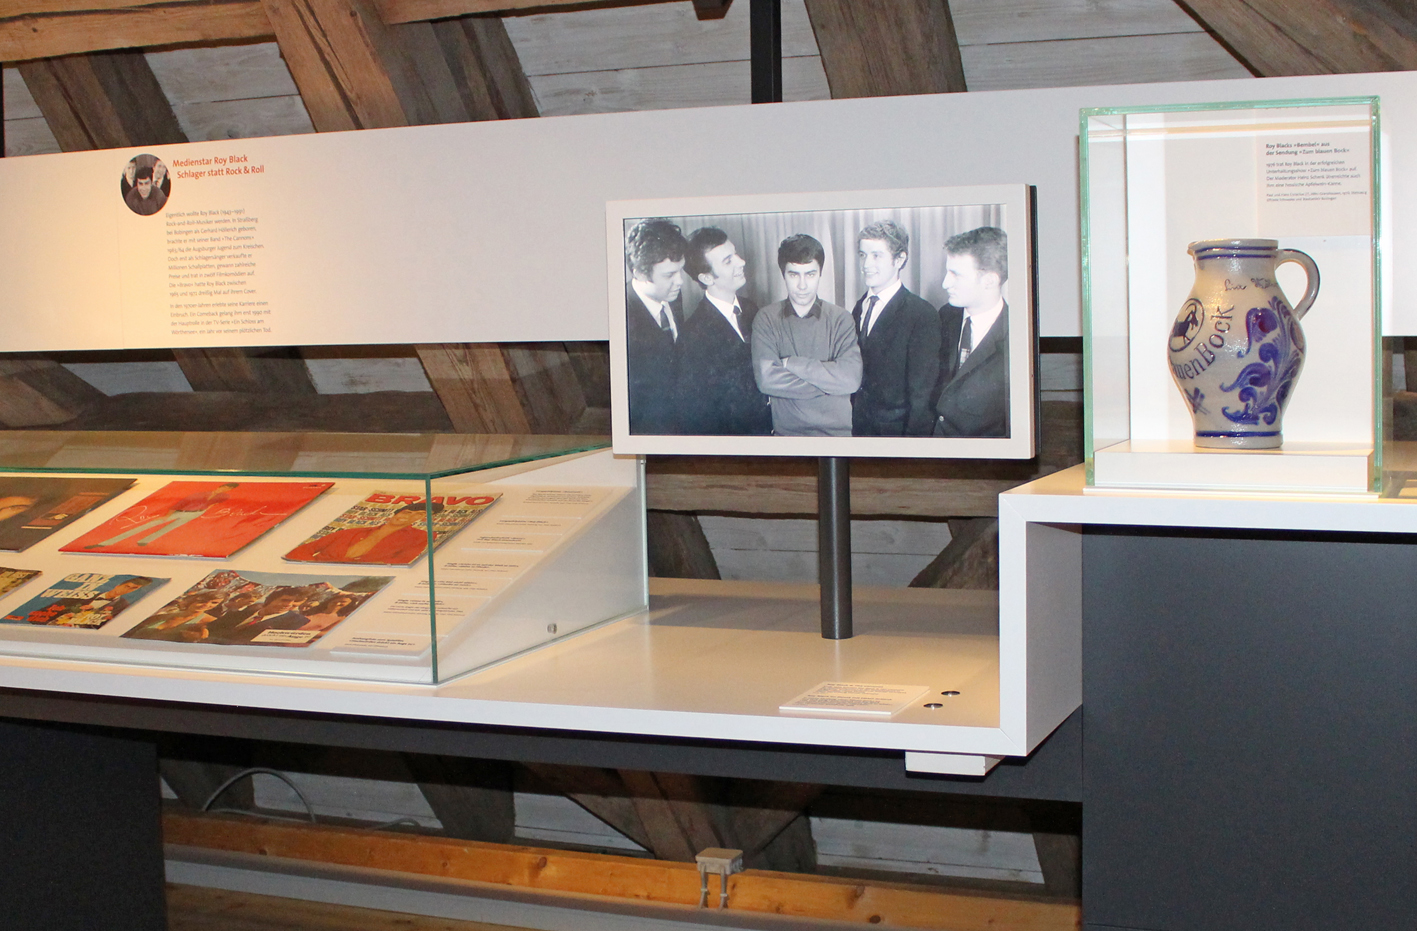 Kennenlern-Führung durch die Dauerausstellung des Museums Oberschönenfeld